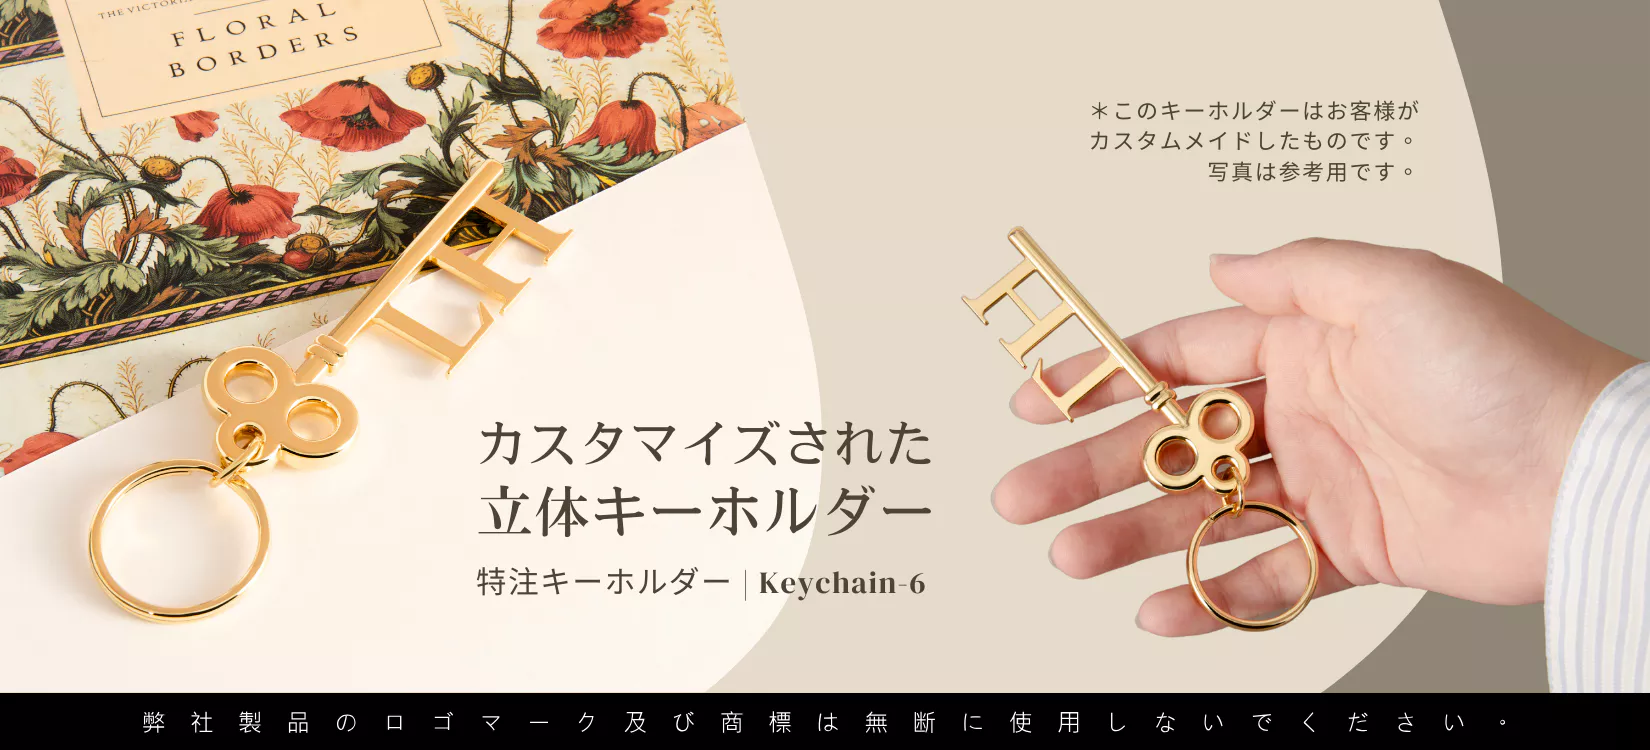 Keychain-6_金属鍵形キーチェーン_Mobile-jp